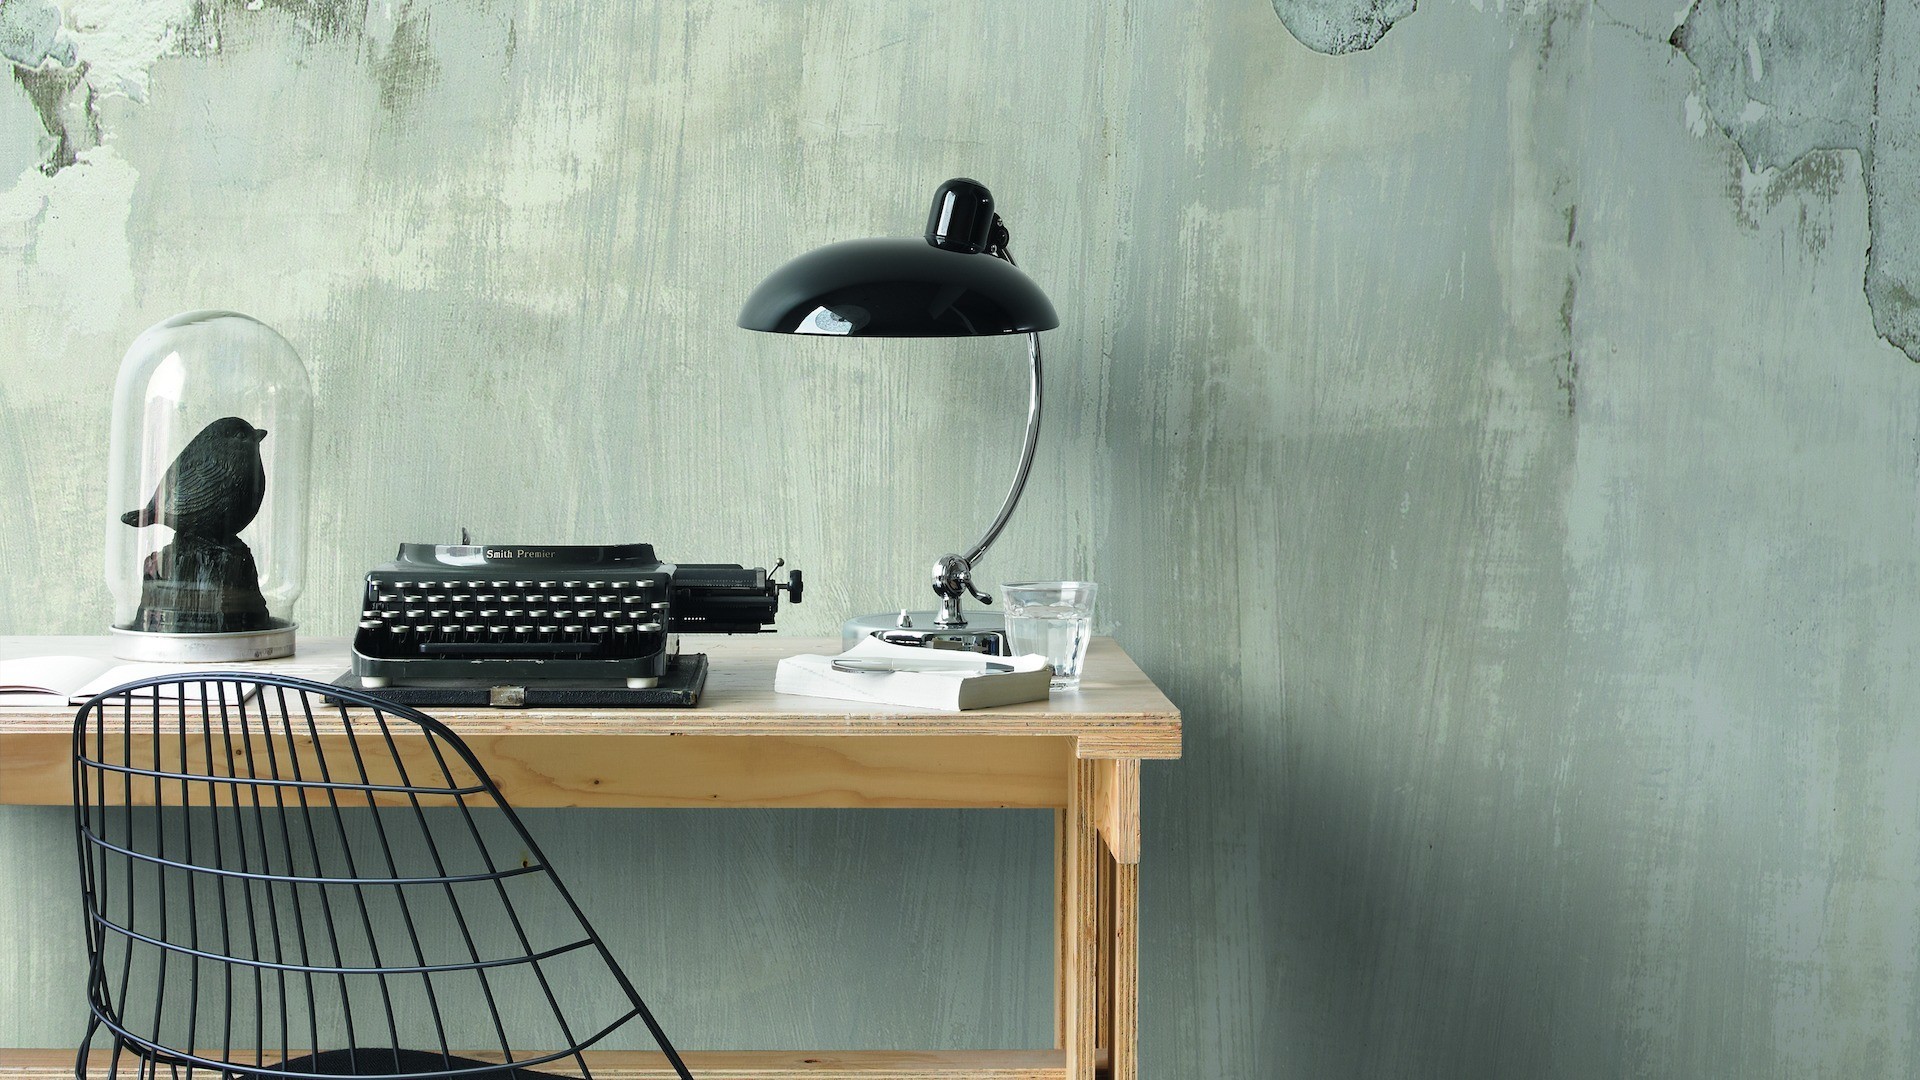 Картинка: Рабочий стол, лампа, стена, стол, печатная машинка, чучело, стул